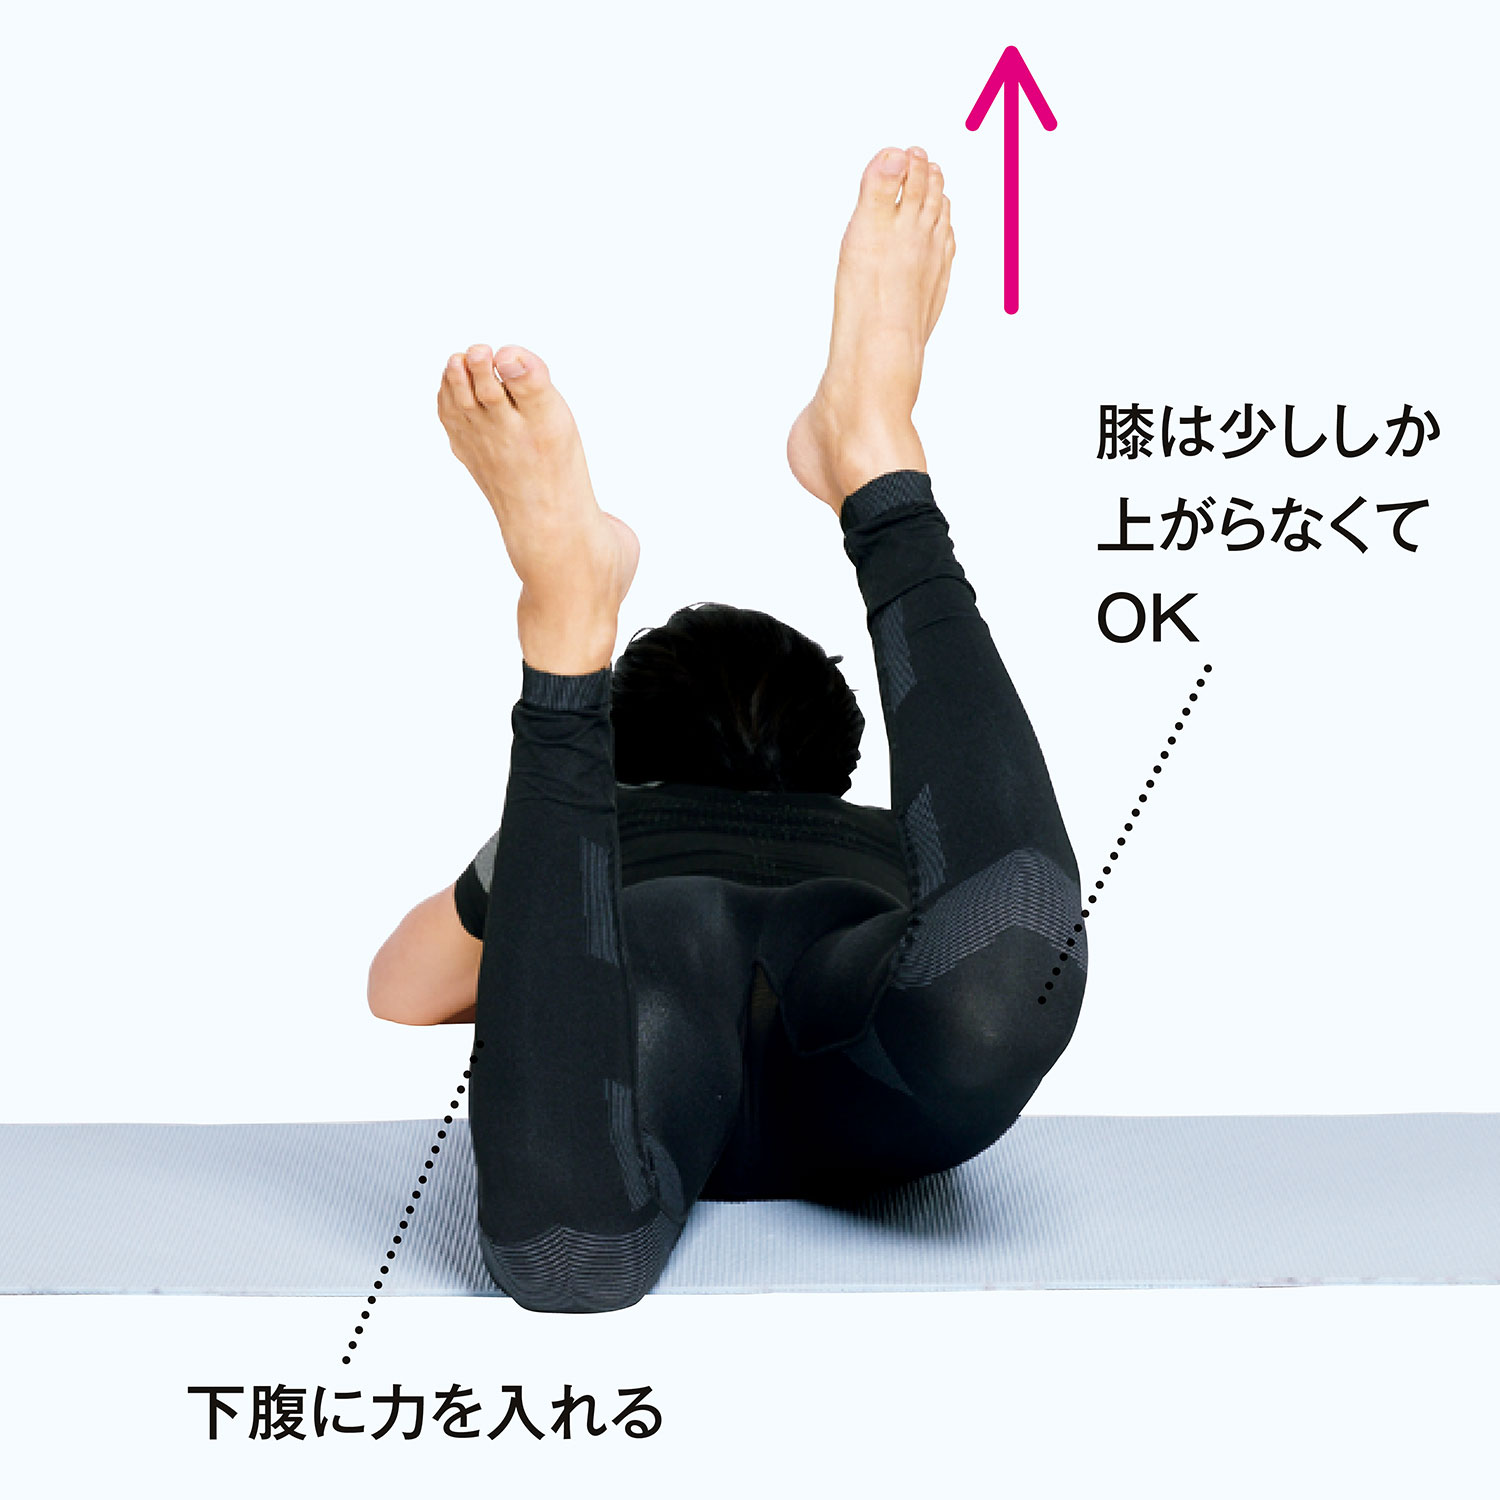 股関節の力を抜いて、右の膝を床から少し上げる